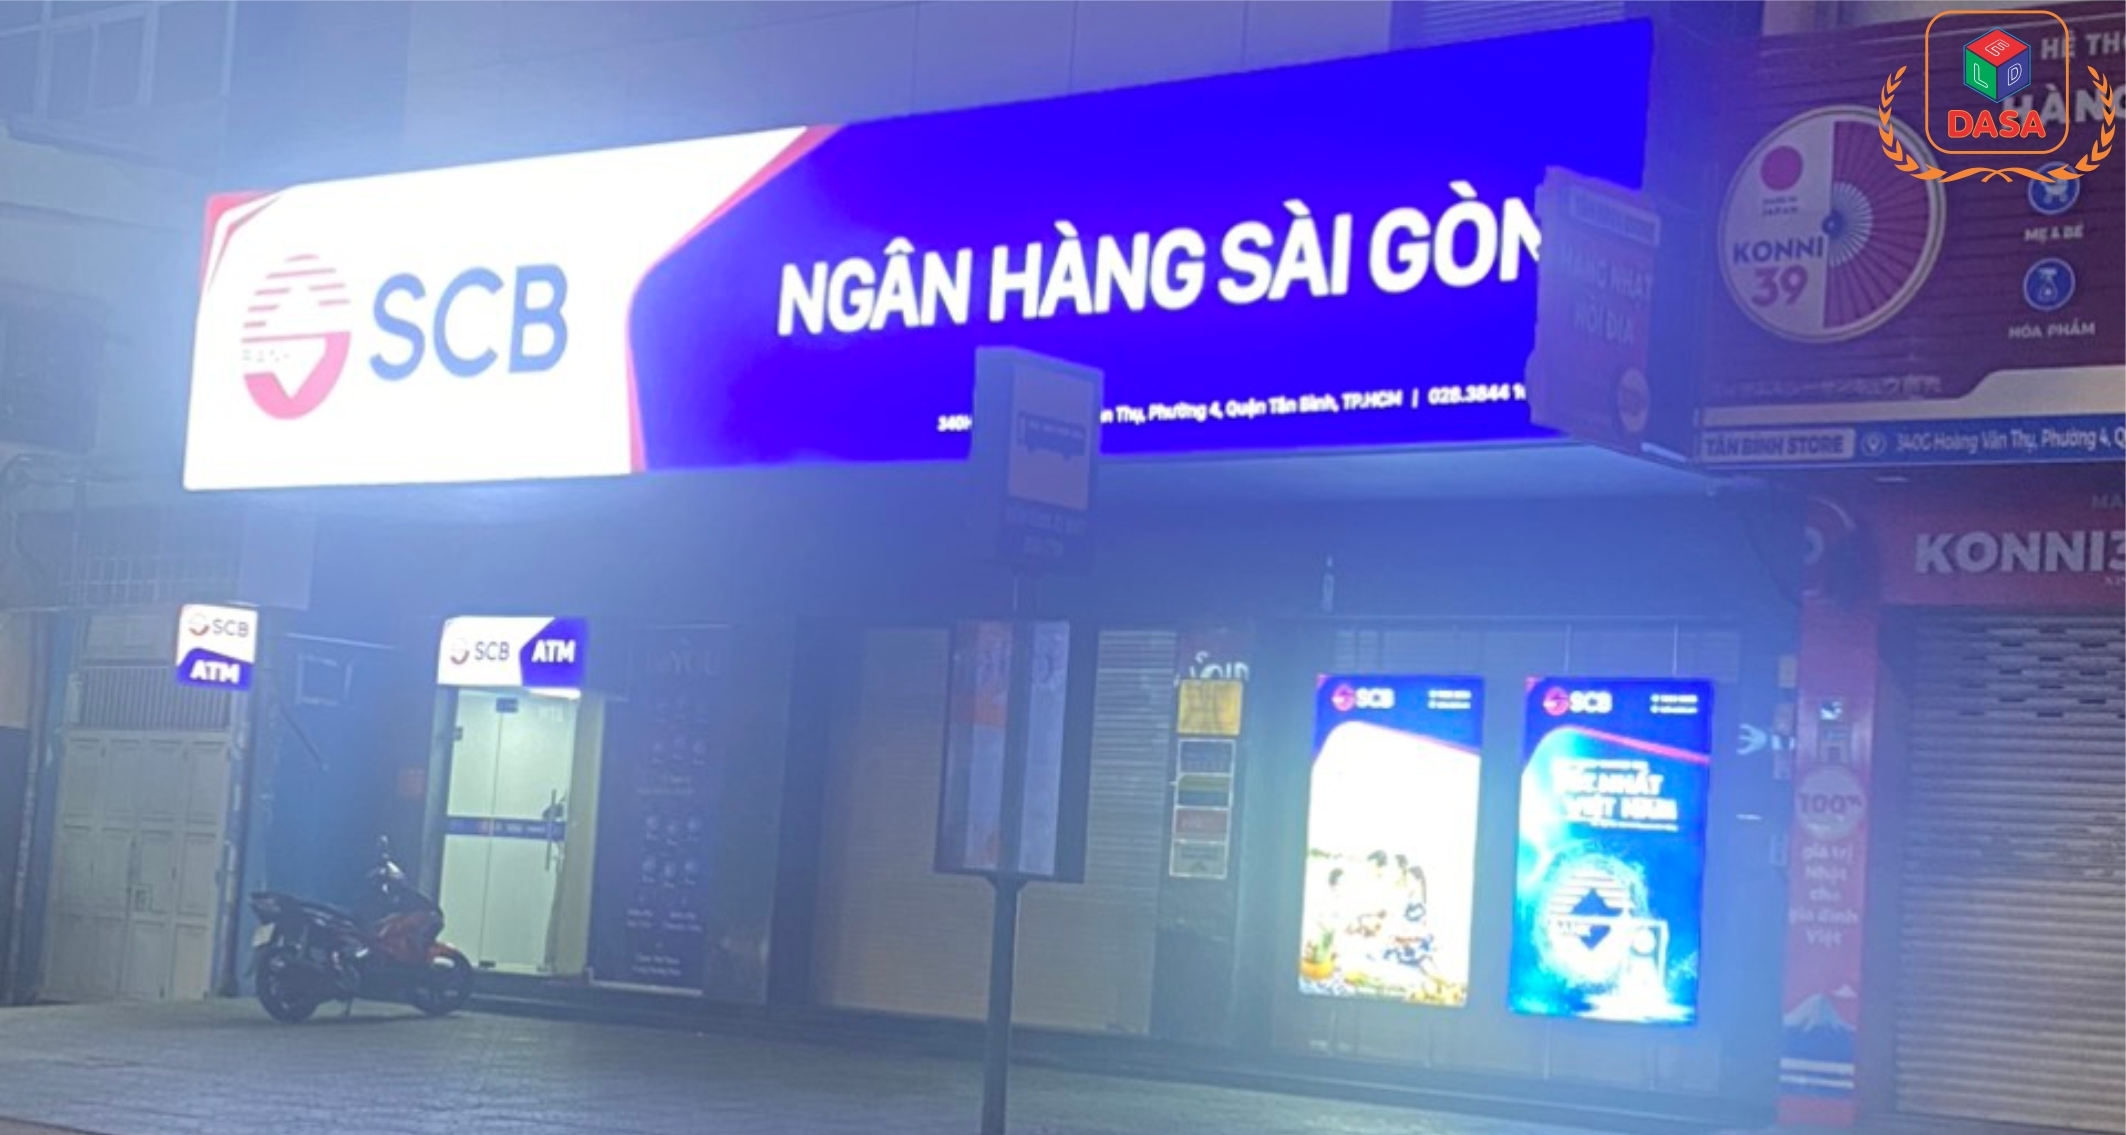 CÔNG TRÌNH NGÂN HÀNG TPBANK